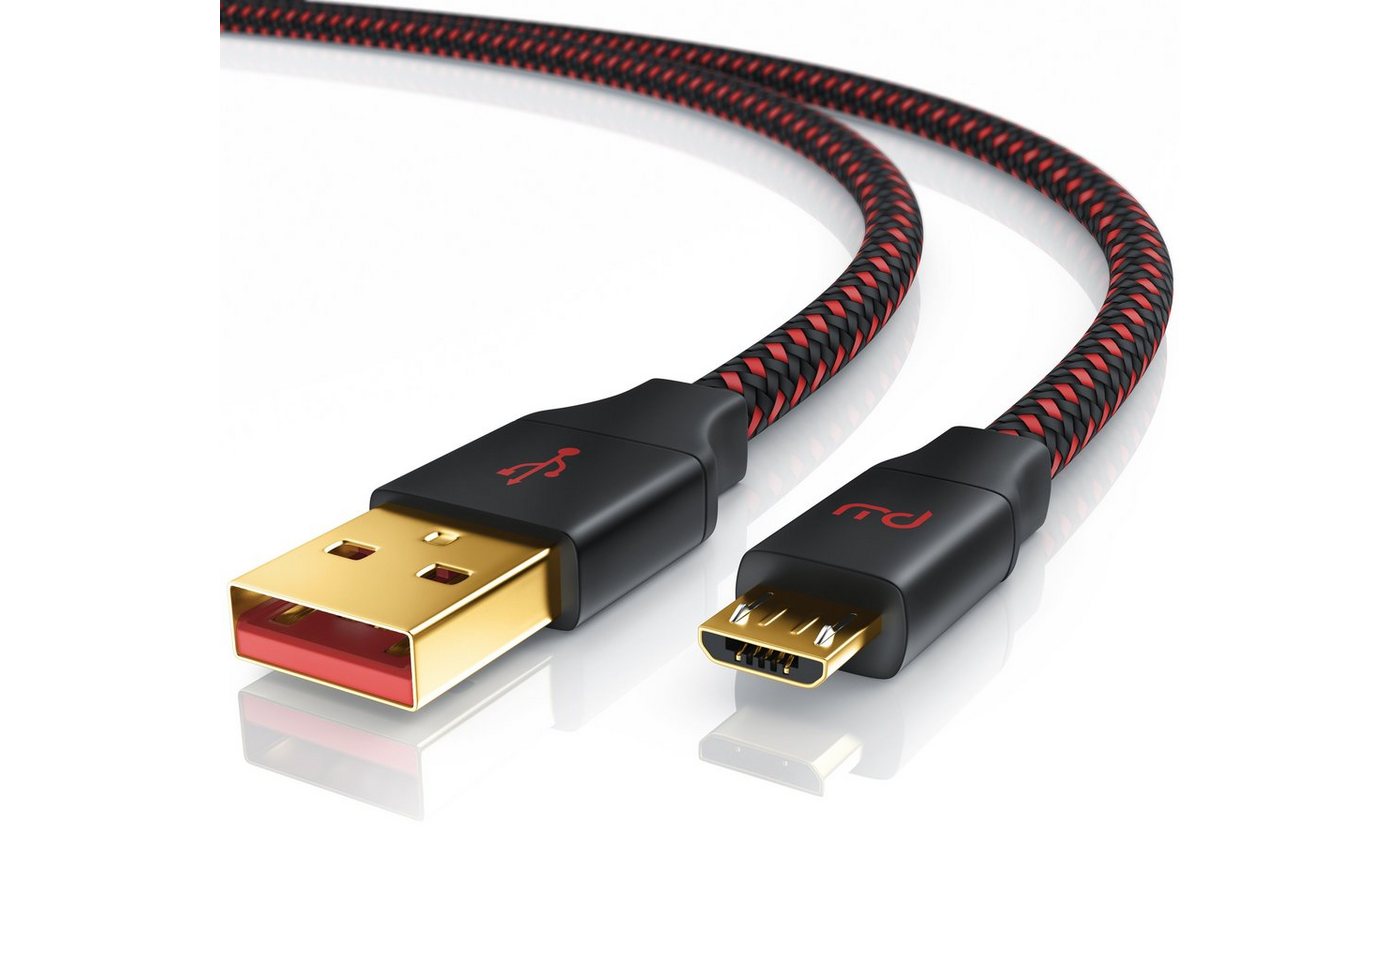 Primewire USB-Kabel, 2.0, Micro-USB, USB Typ A (200 cm), UltimateCharge MicroUSB 2.0 Schnellladekabel mit Datenübertragung - 2m von Primewire